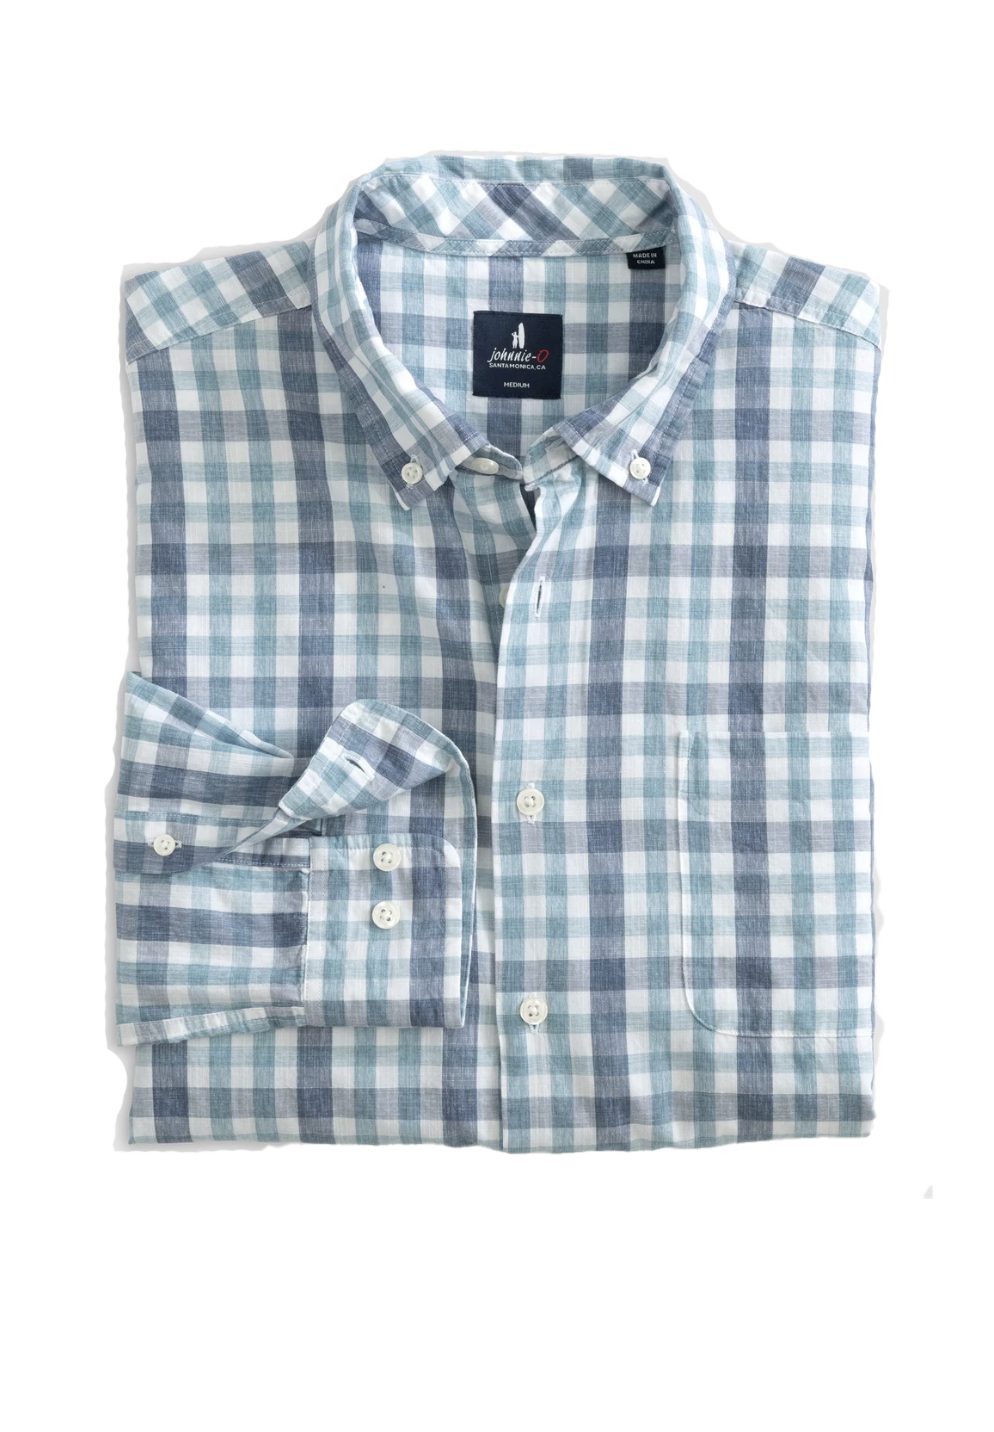 Fordhart Button Up Shirt